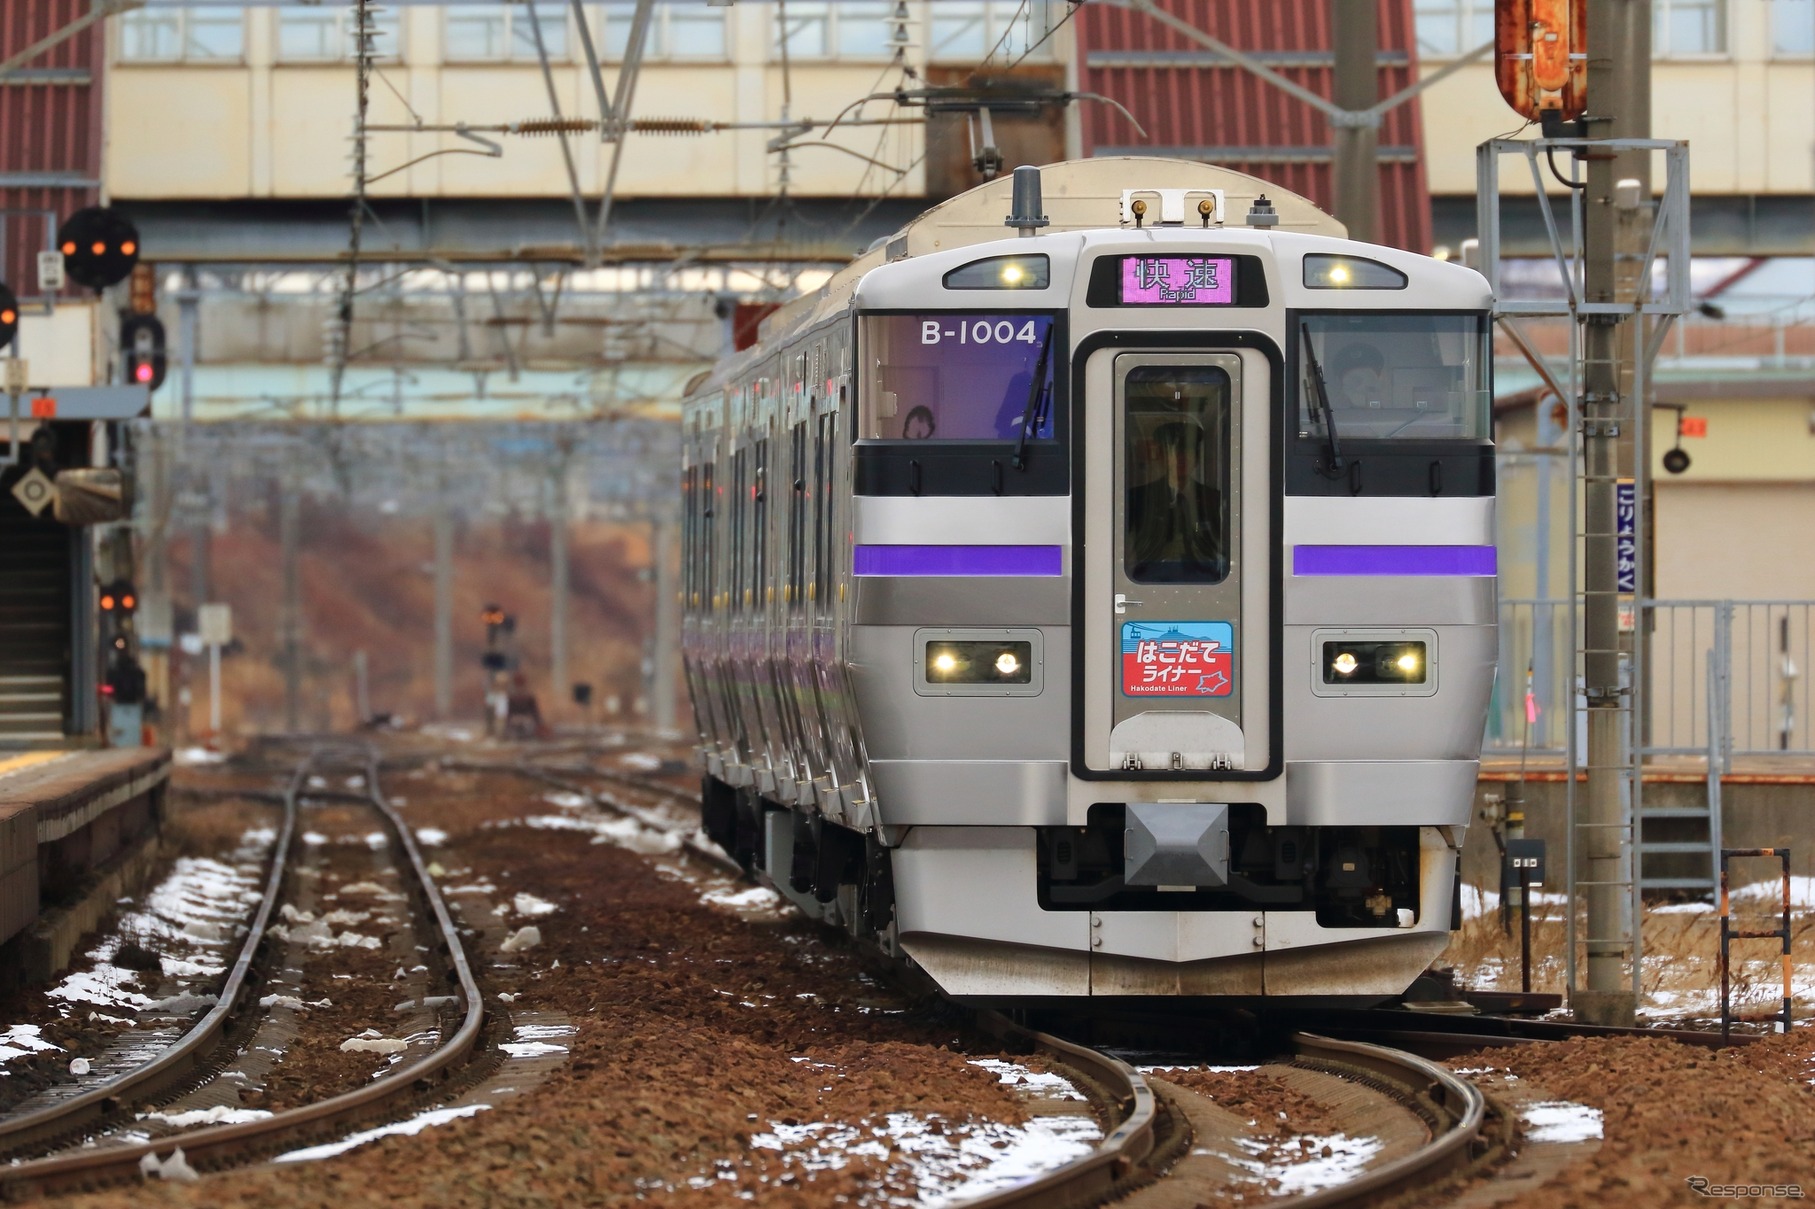 函館～新函館北斗間で運行されている新幹線連絡列車の『はこだてライナー』。北海道新幹線函館延伸がミニ新幹線となると、3線軌条、または複線の片側が新幹線と同じ標準軌になる公算が高い。